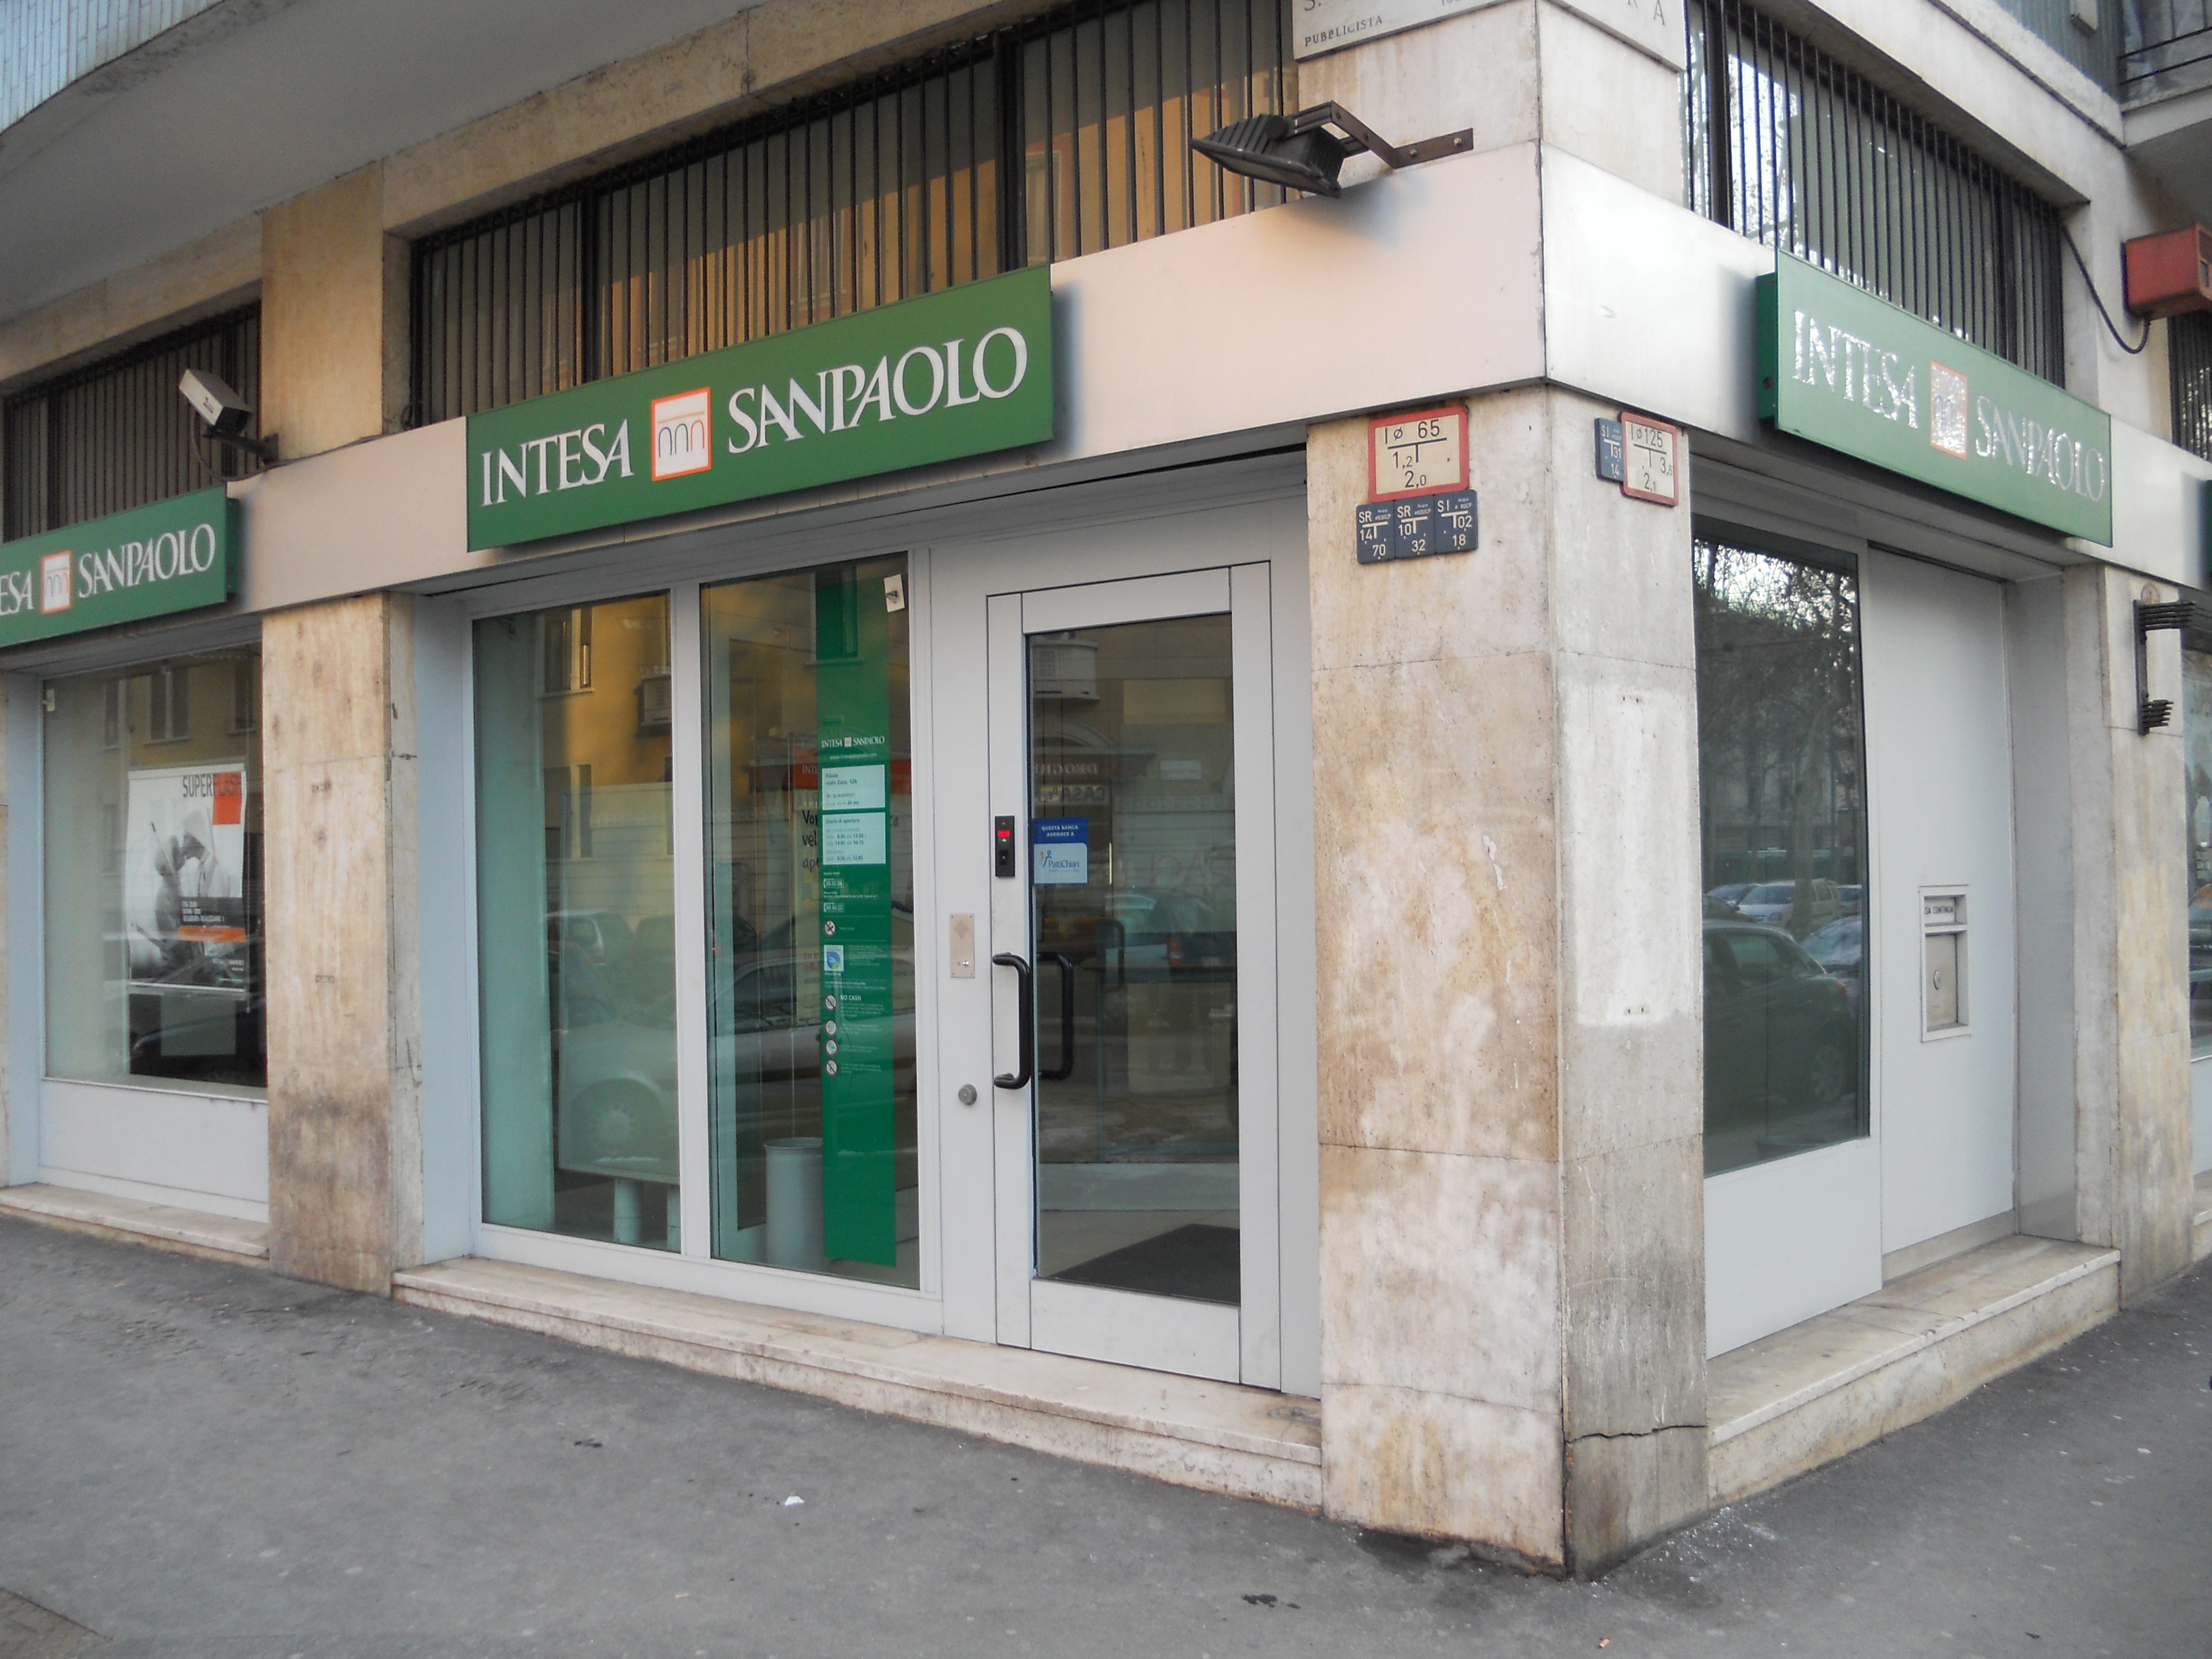 Intesa Sanpaolo: in banca solo su appuntamento - Il Torinese